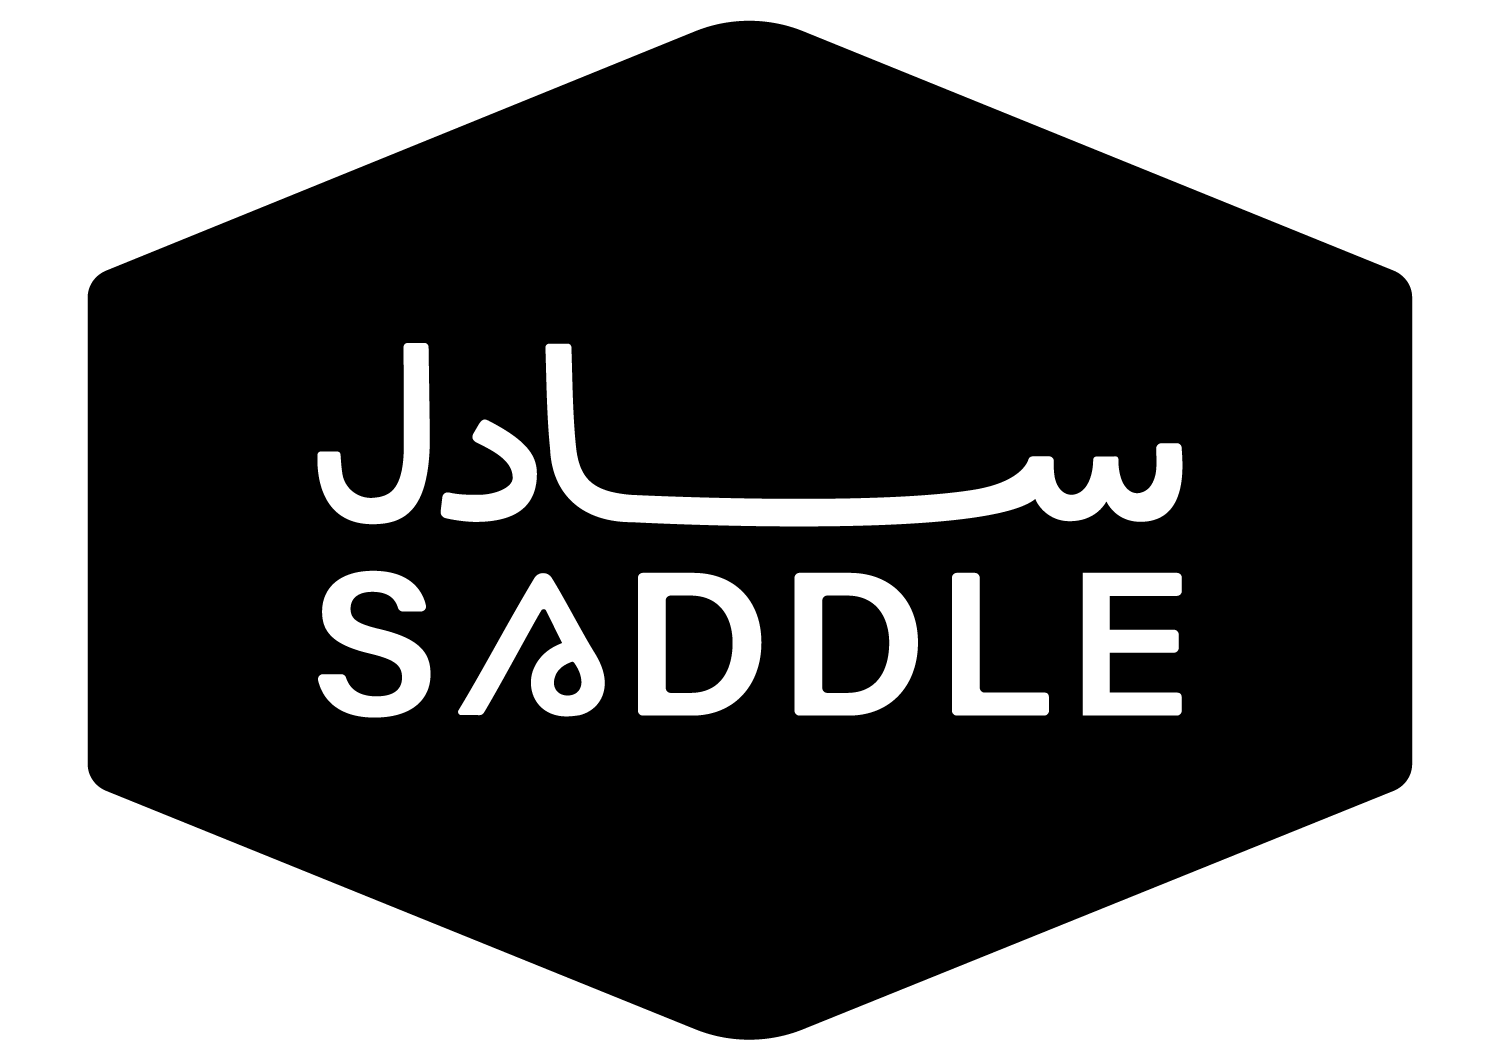 Saddle